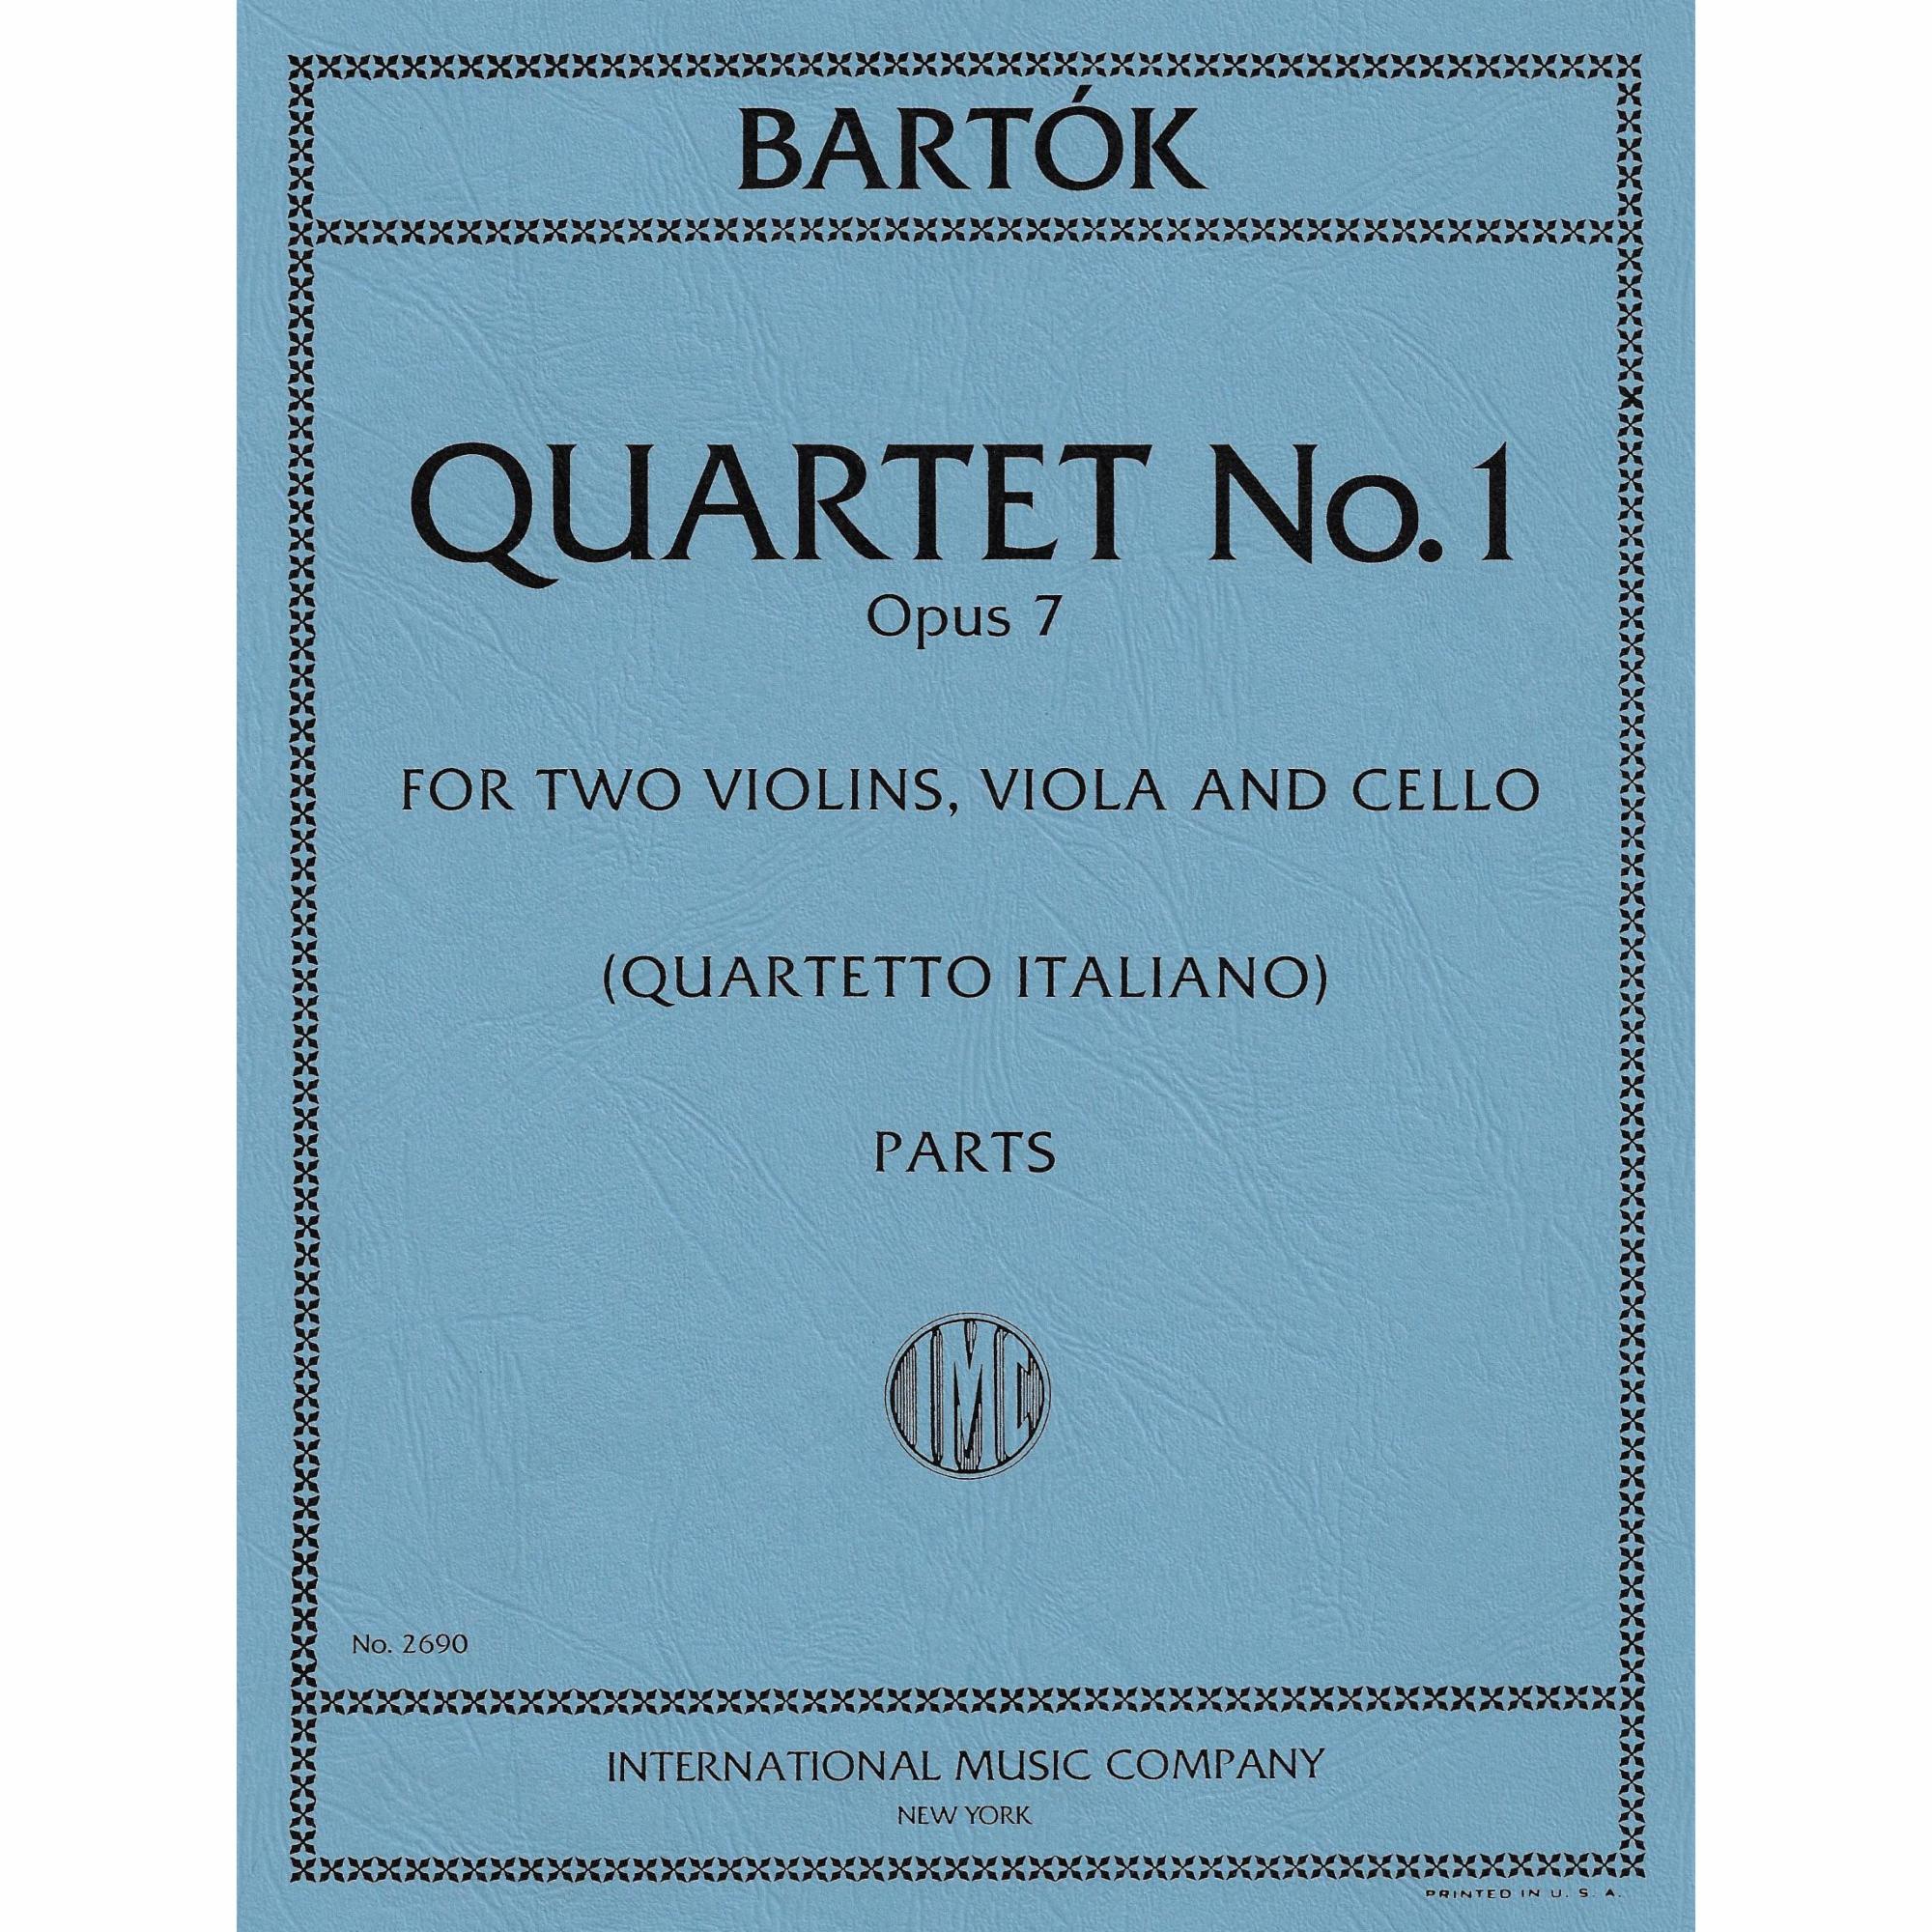 Bartok -- String Quartet No. 1, Op.7